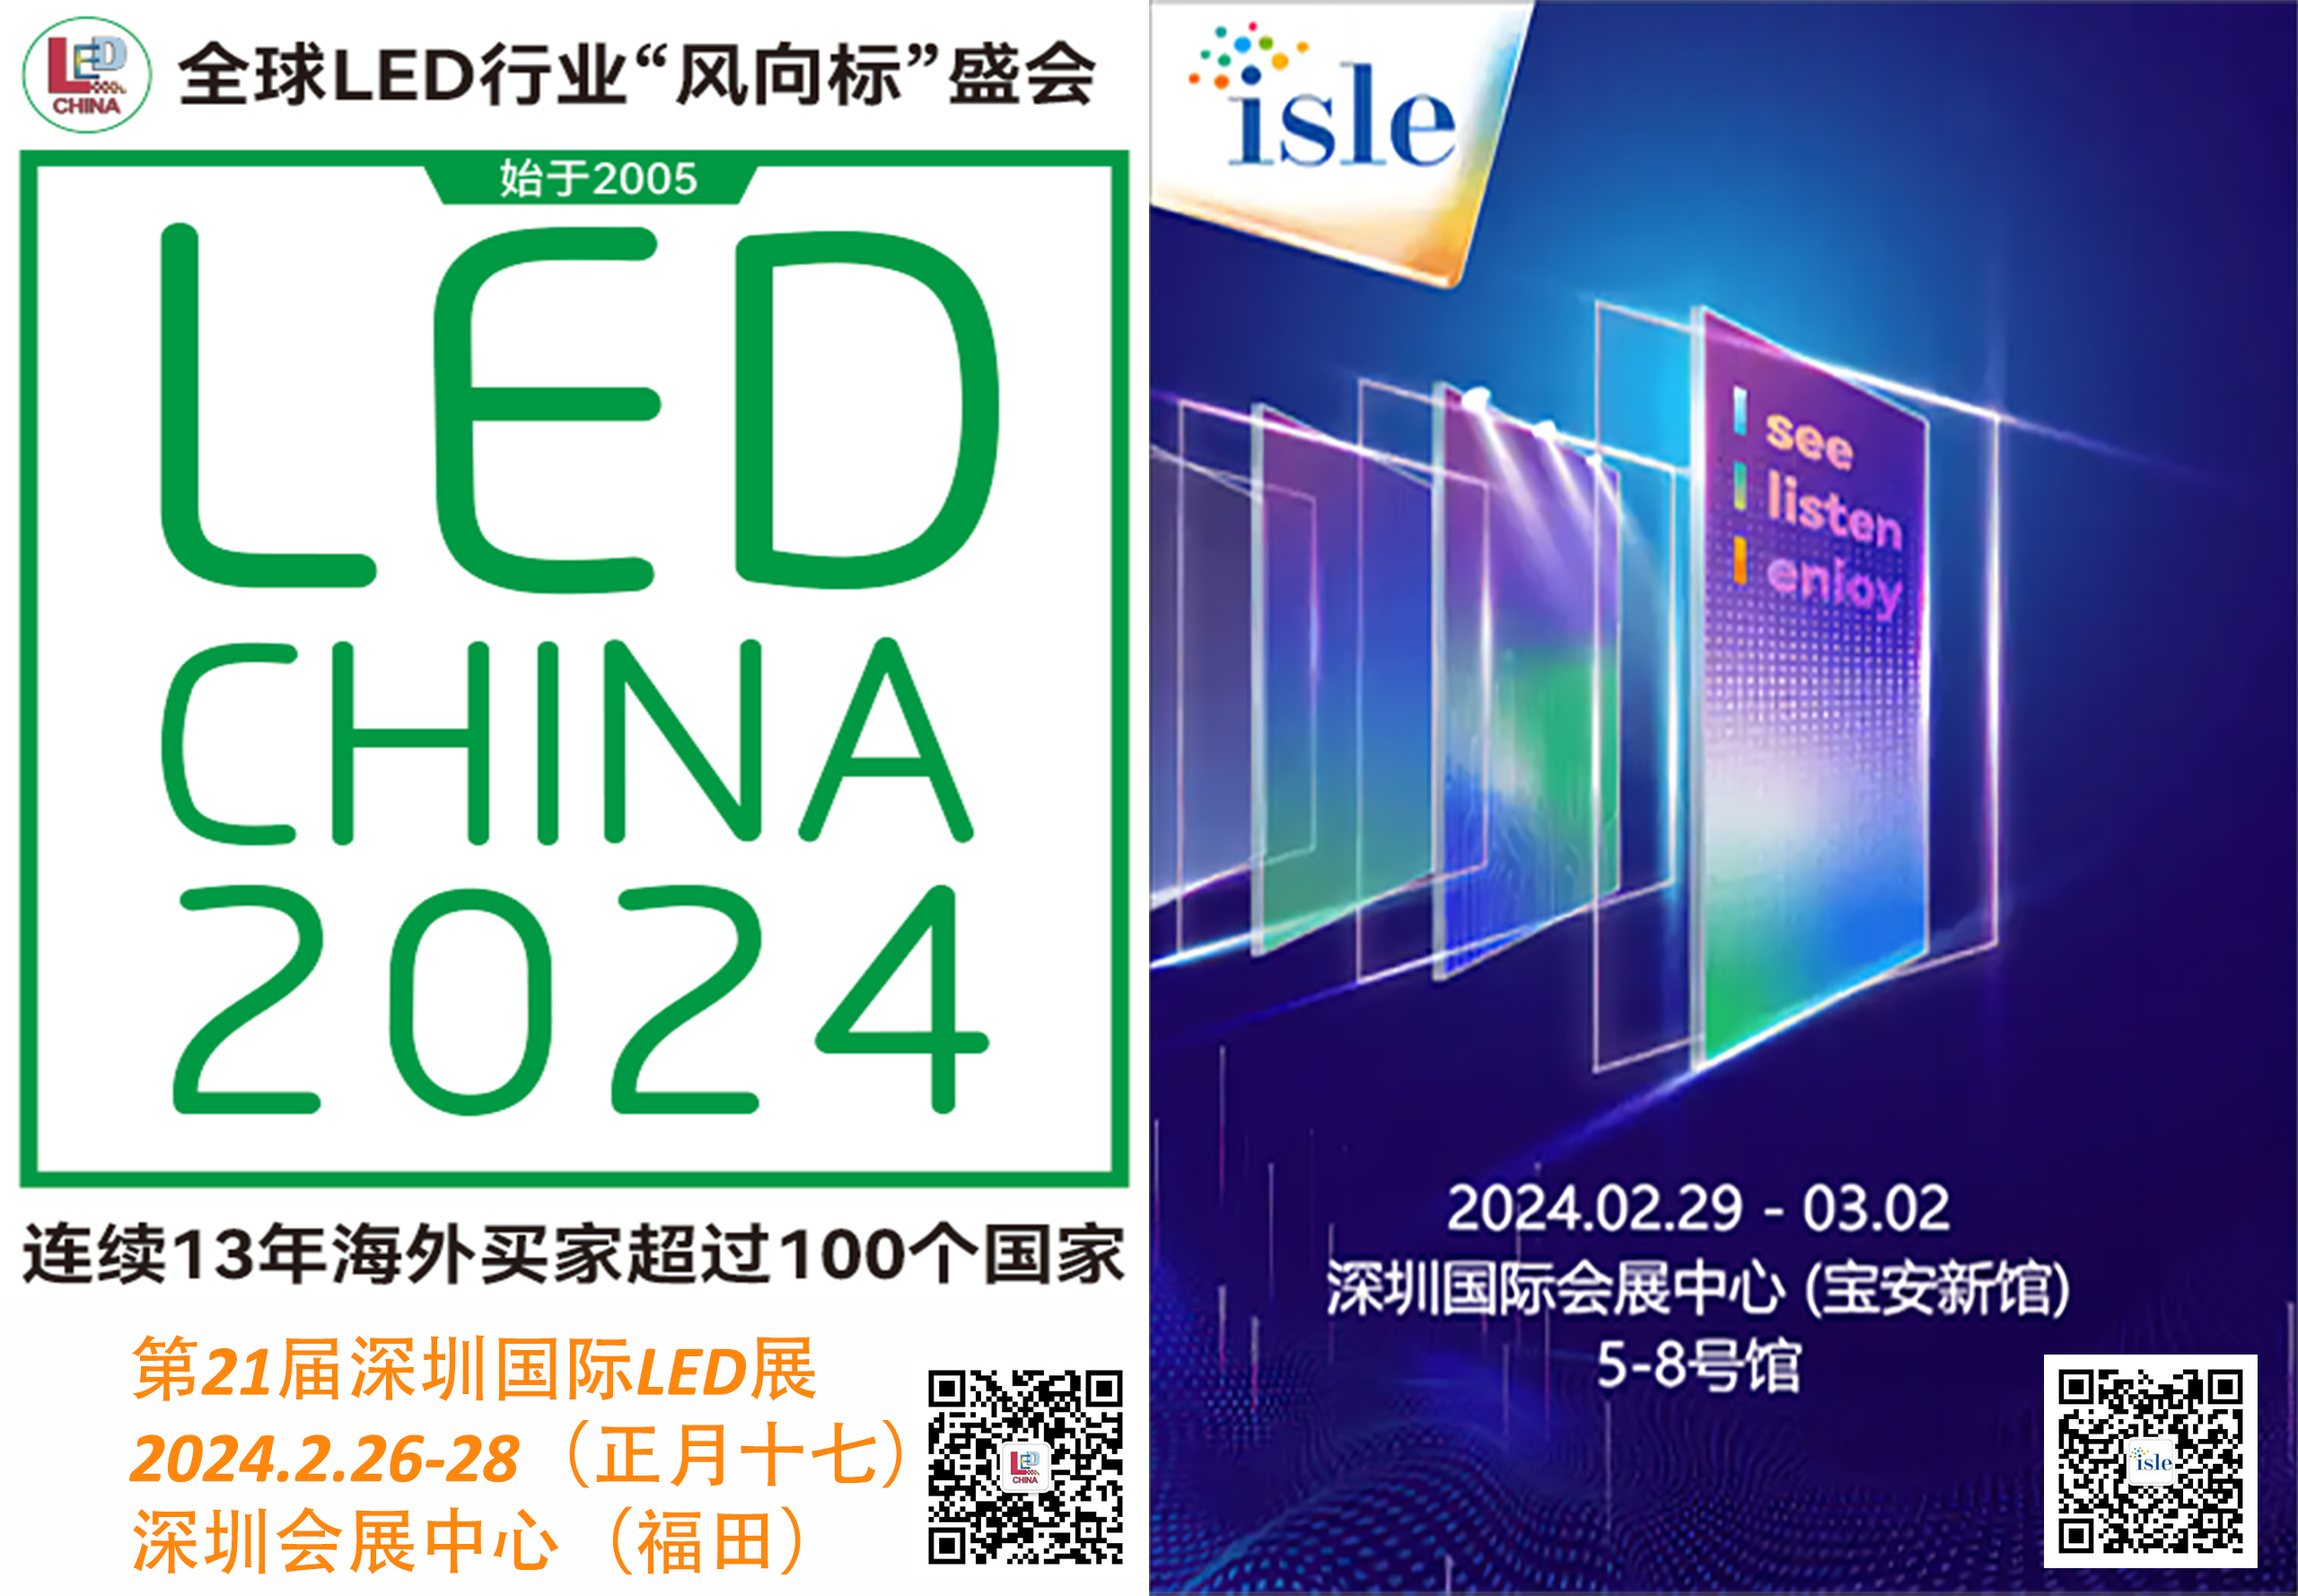 LED, ISLE presenta las últimas tecnologías LED y de pantallas inteligentes